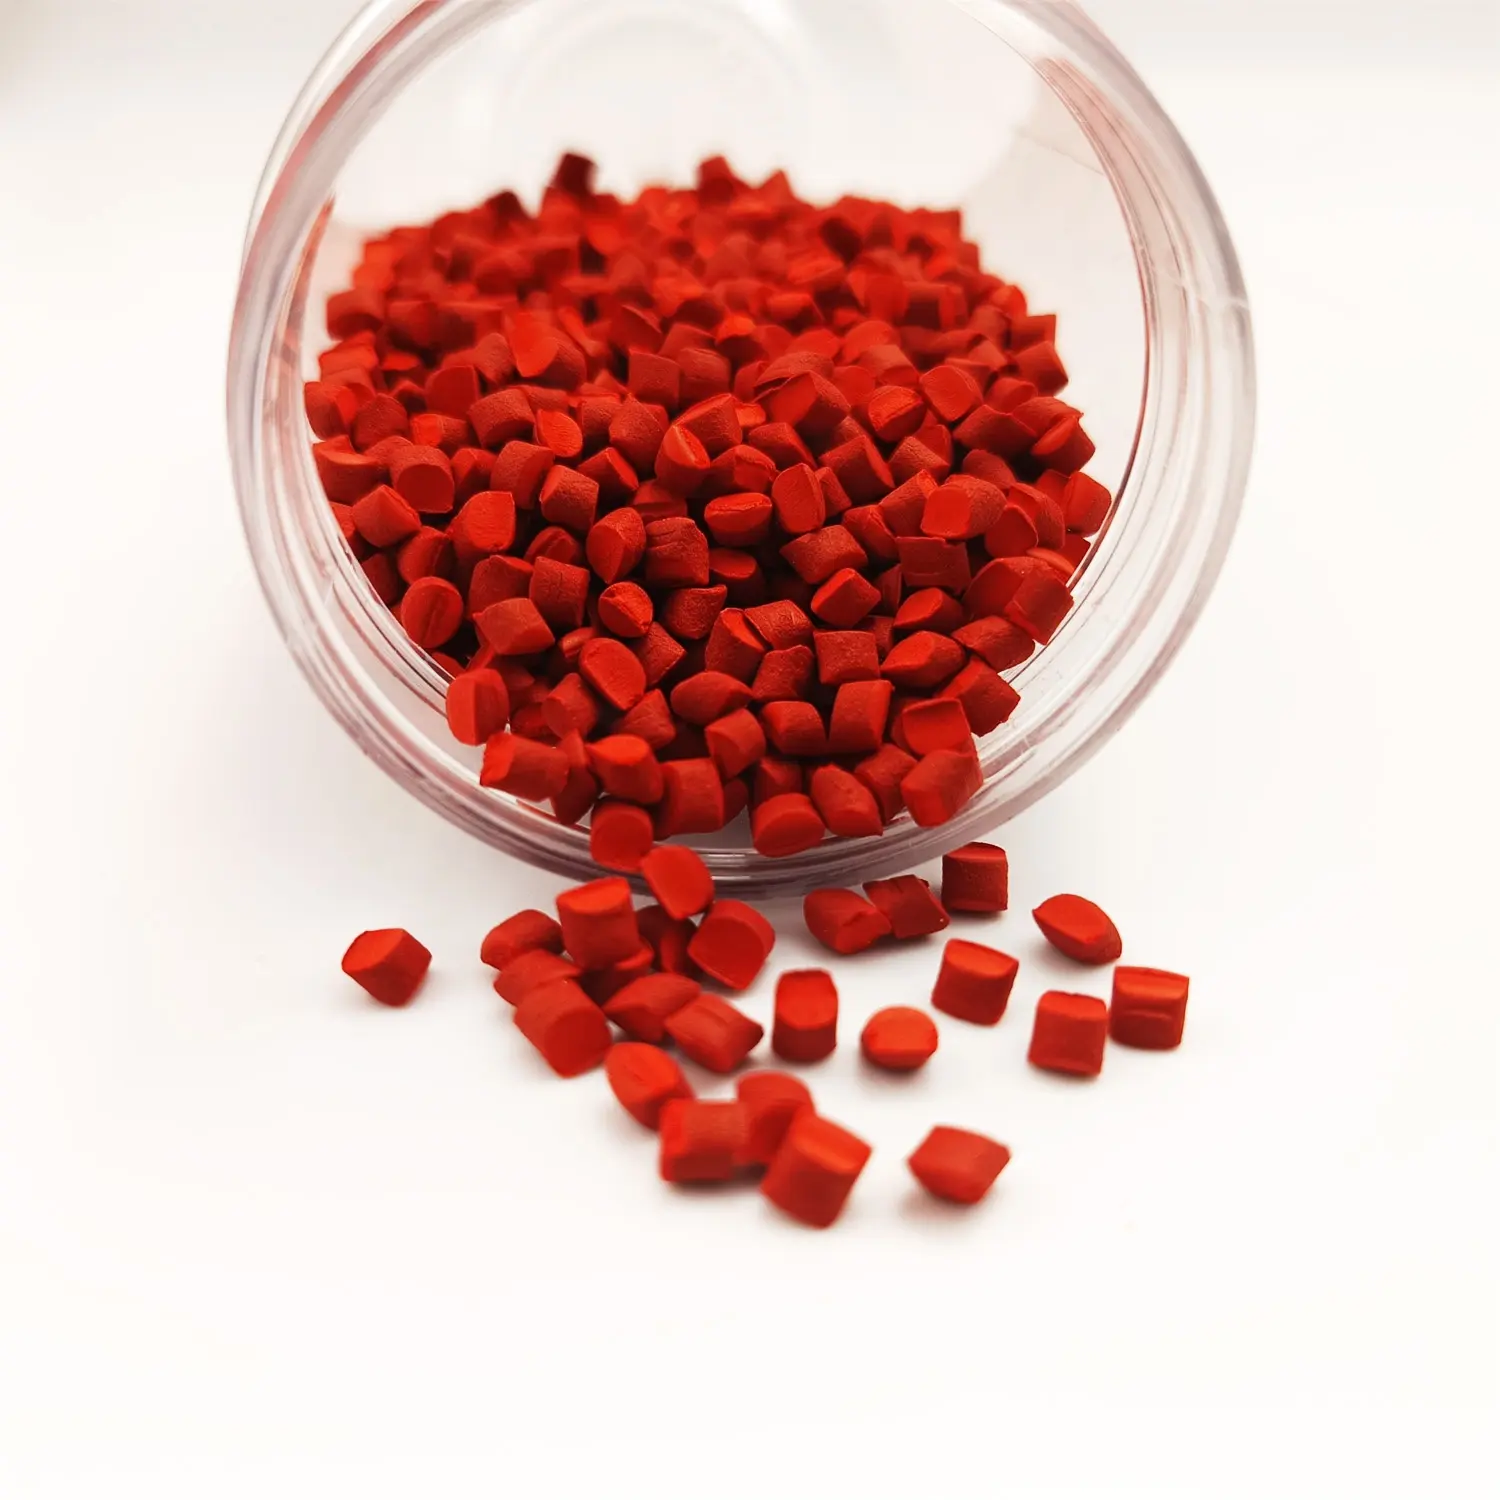 Nuoxin फ़ैक्टरी ब्लो फिल्म के लिए सुंदर रंग का चमकीला लाल मास्टर बैच